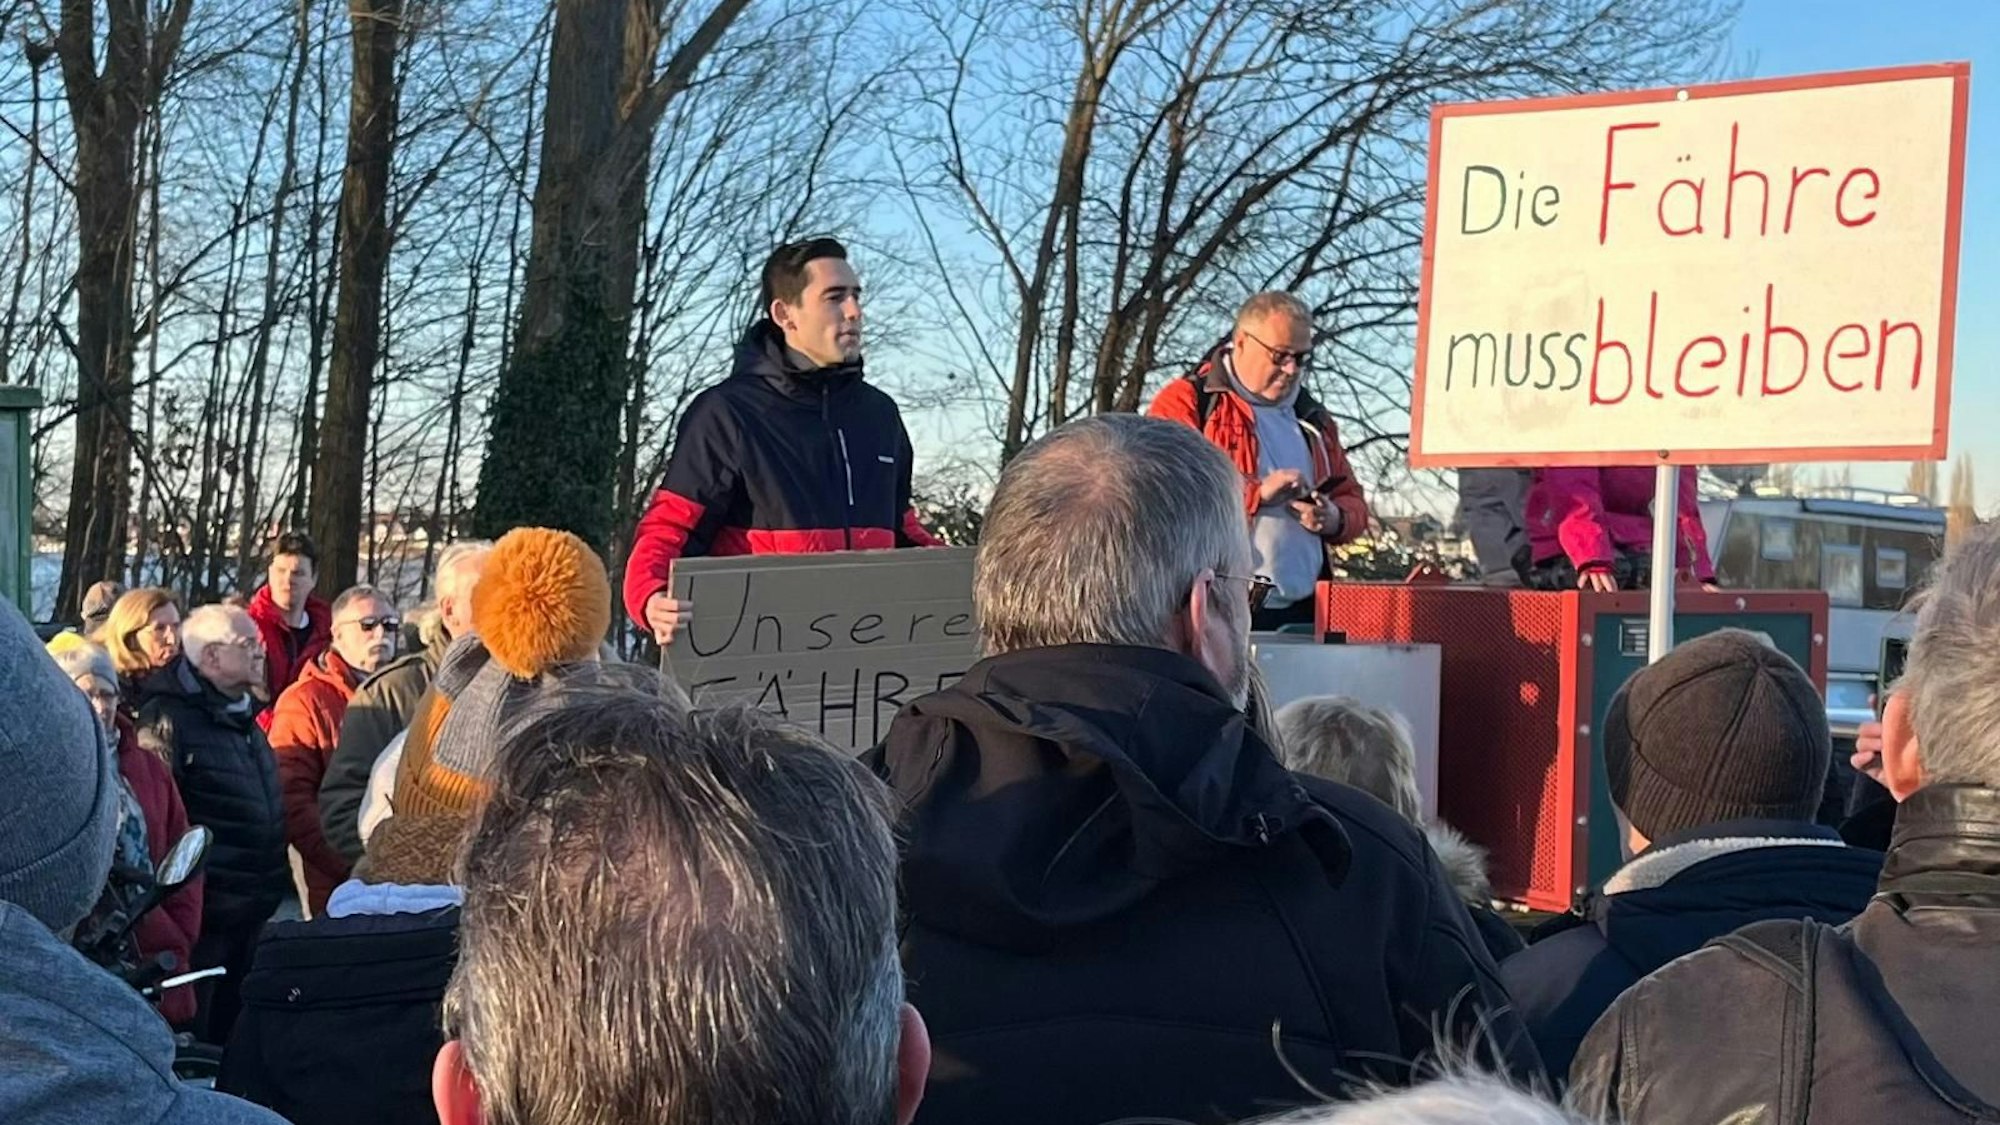 Mattis Dieterich, Vorsitzender des SPD-Ortsverbandes im Kölner Norden, sprach zu den Demonstrierenden.